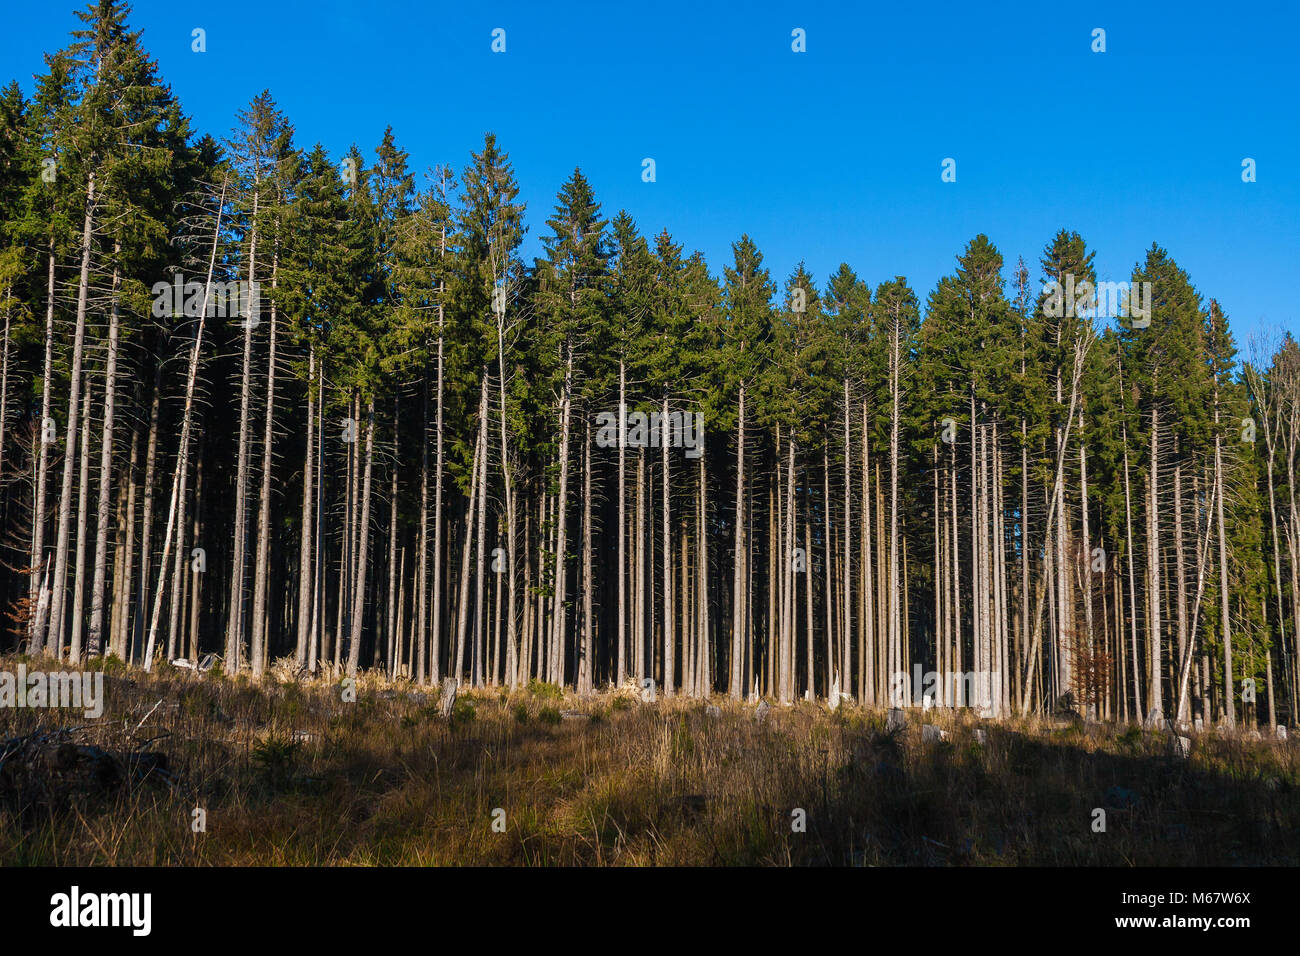 Un bosque de coníferas explotado industrialmente en Vosges, Francia Foto de stock